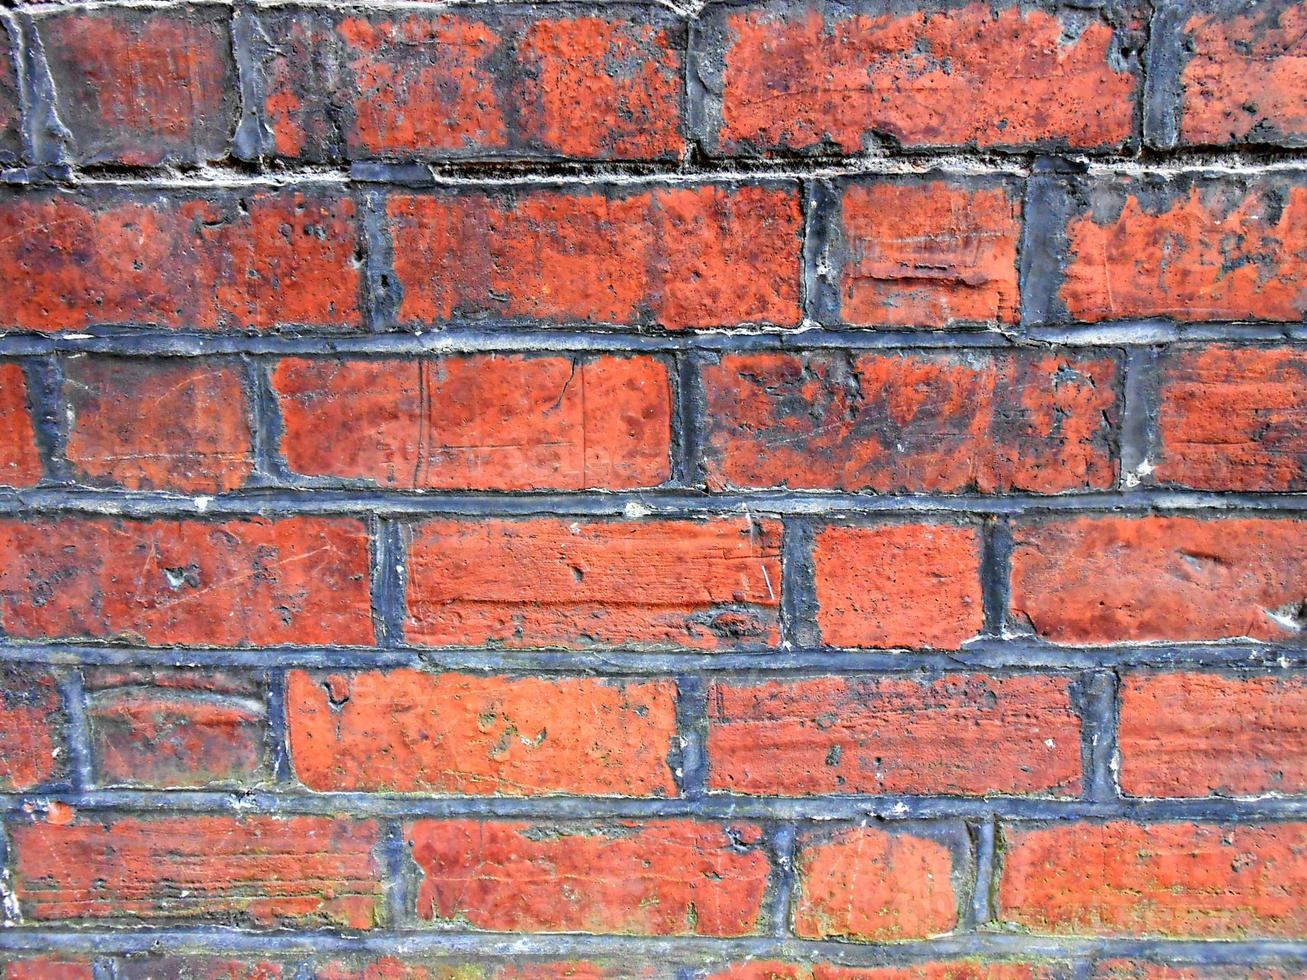 parede de tijolo vermelho foto